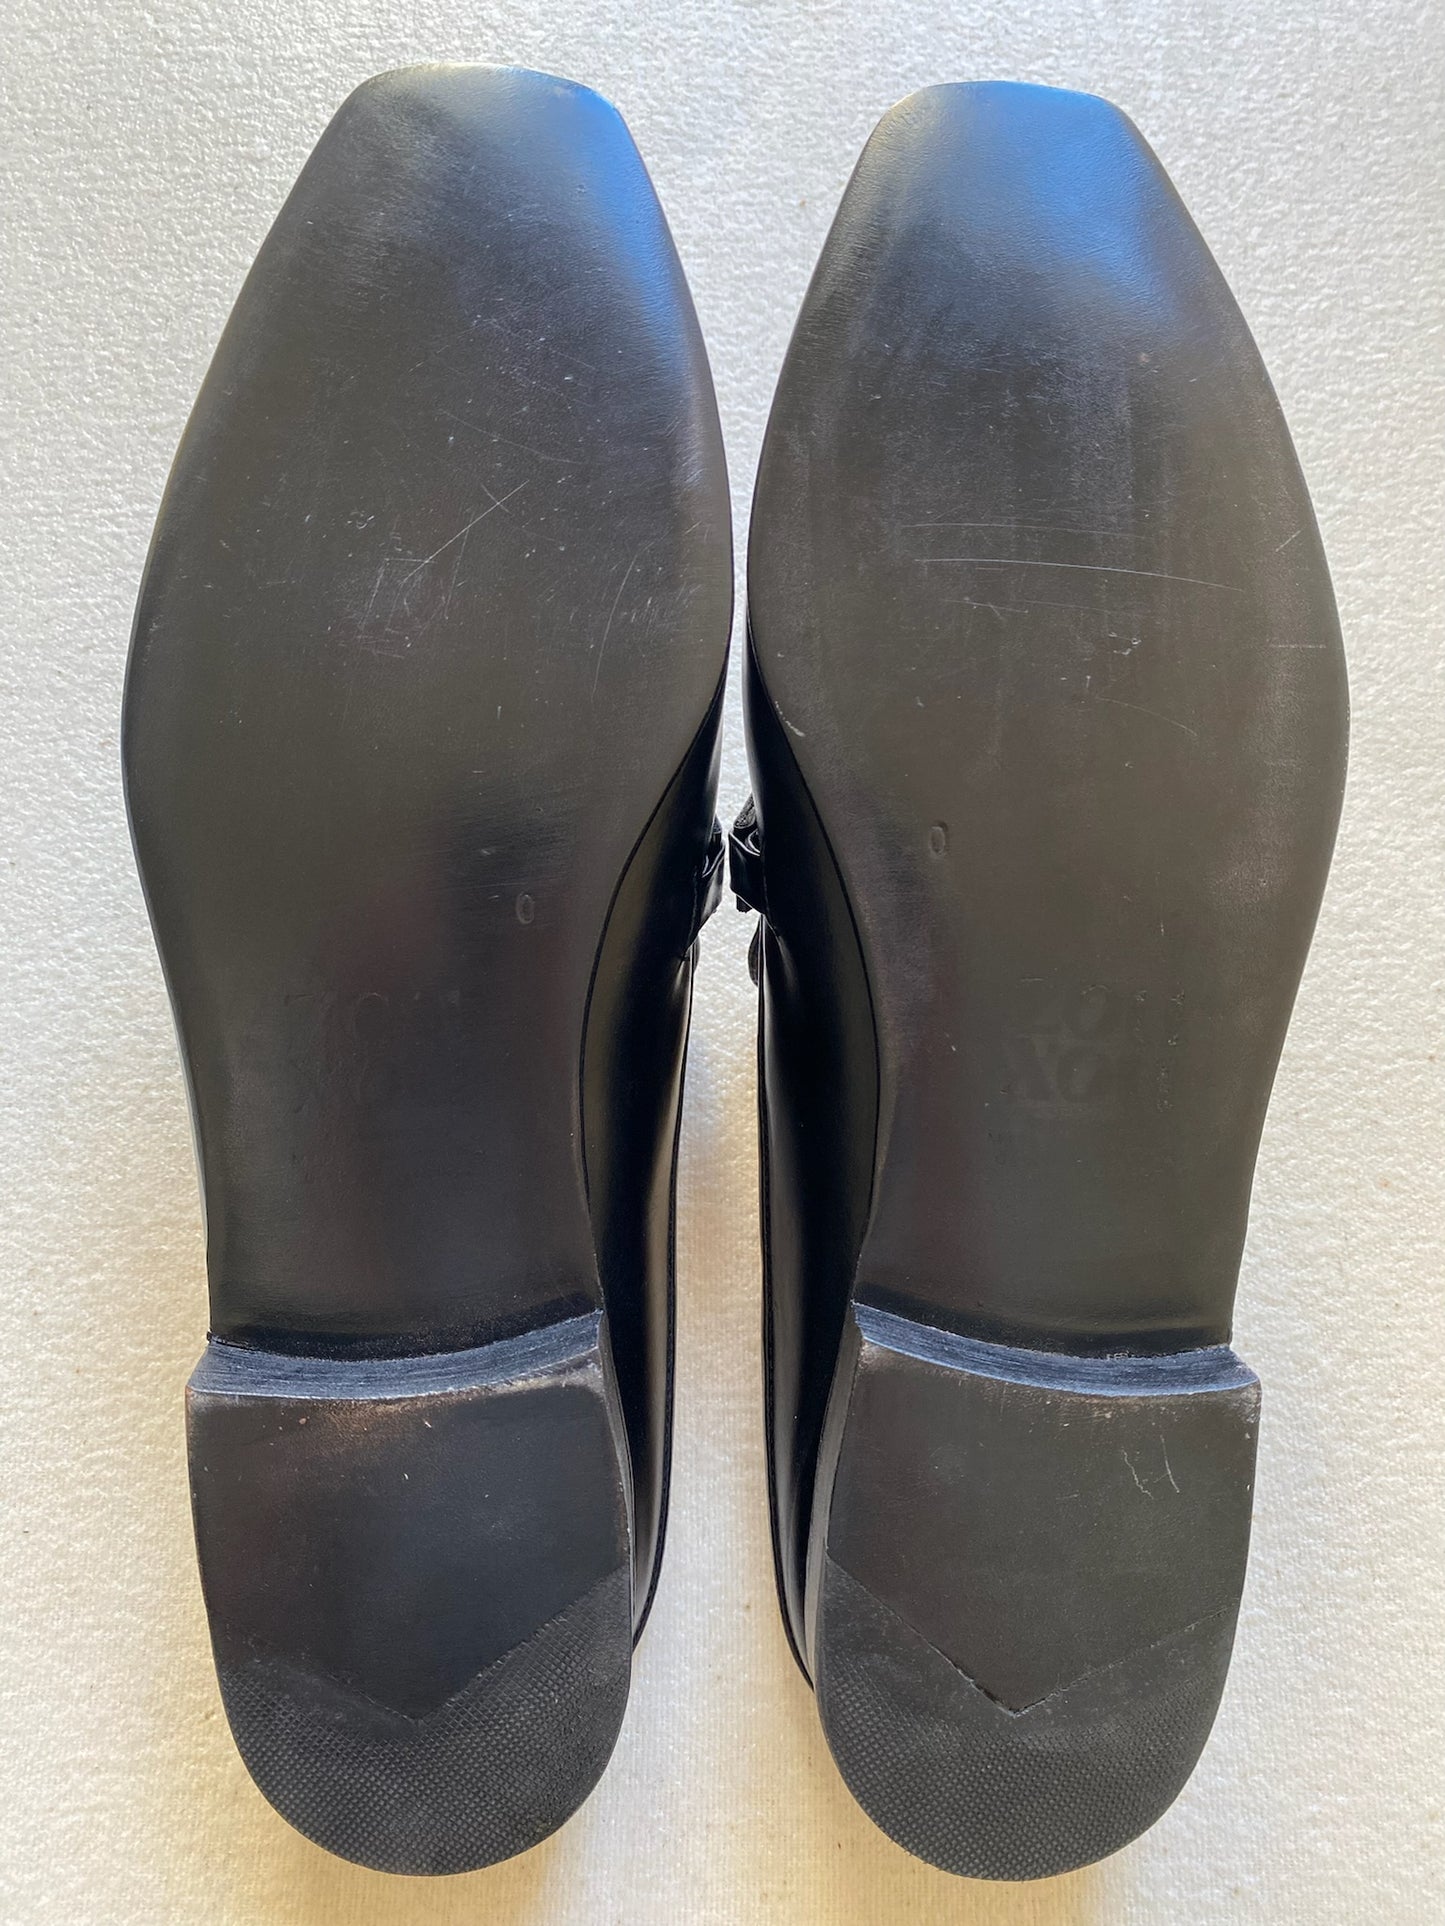 Pilar Mule in Black/Croco Size 40